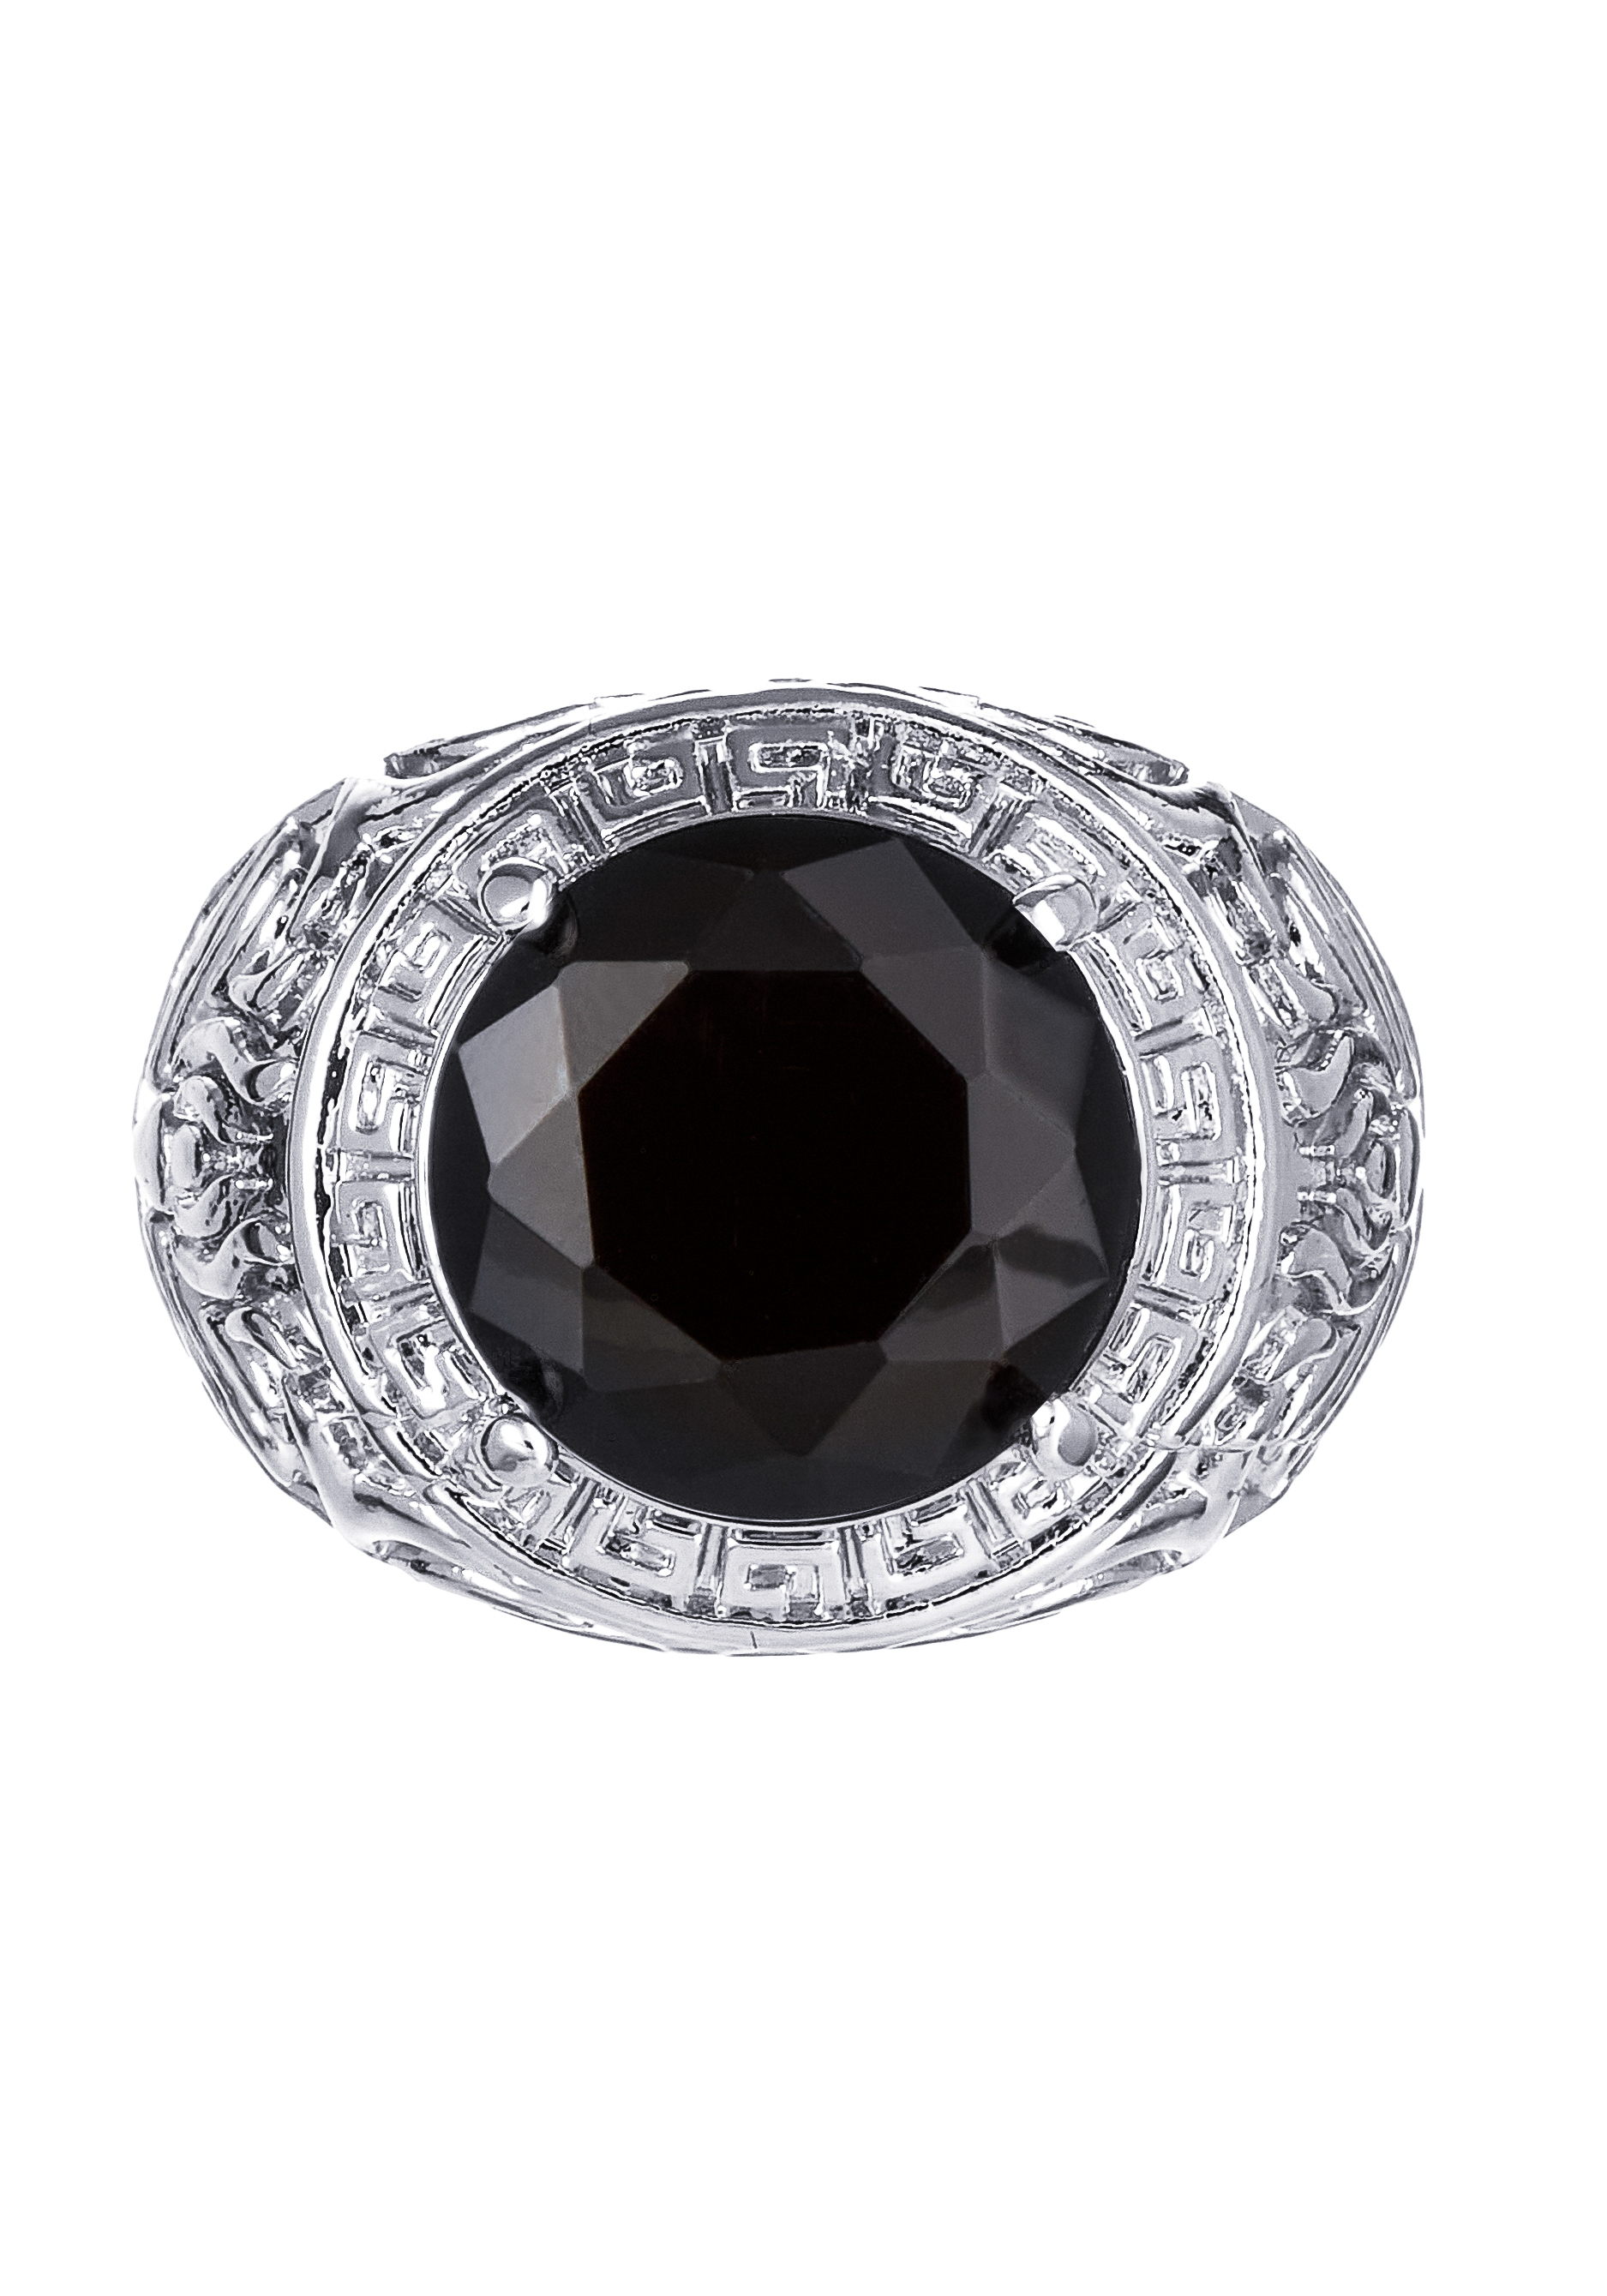 Комплект "Загадочная ночь" Apsara, цвет черный, размер 18 перстень - фото 8